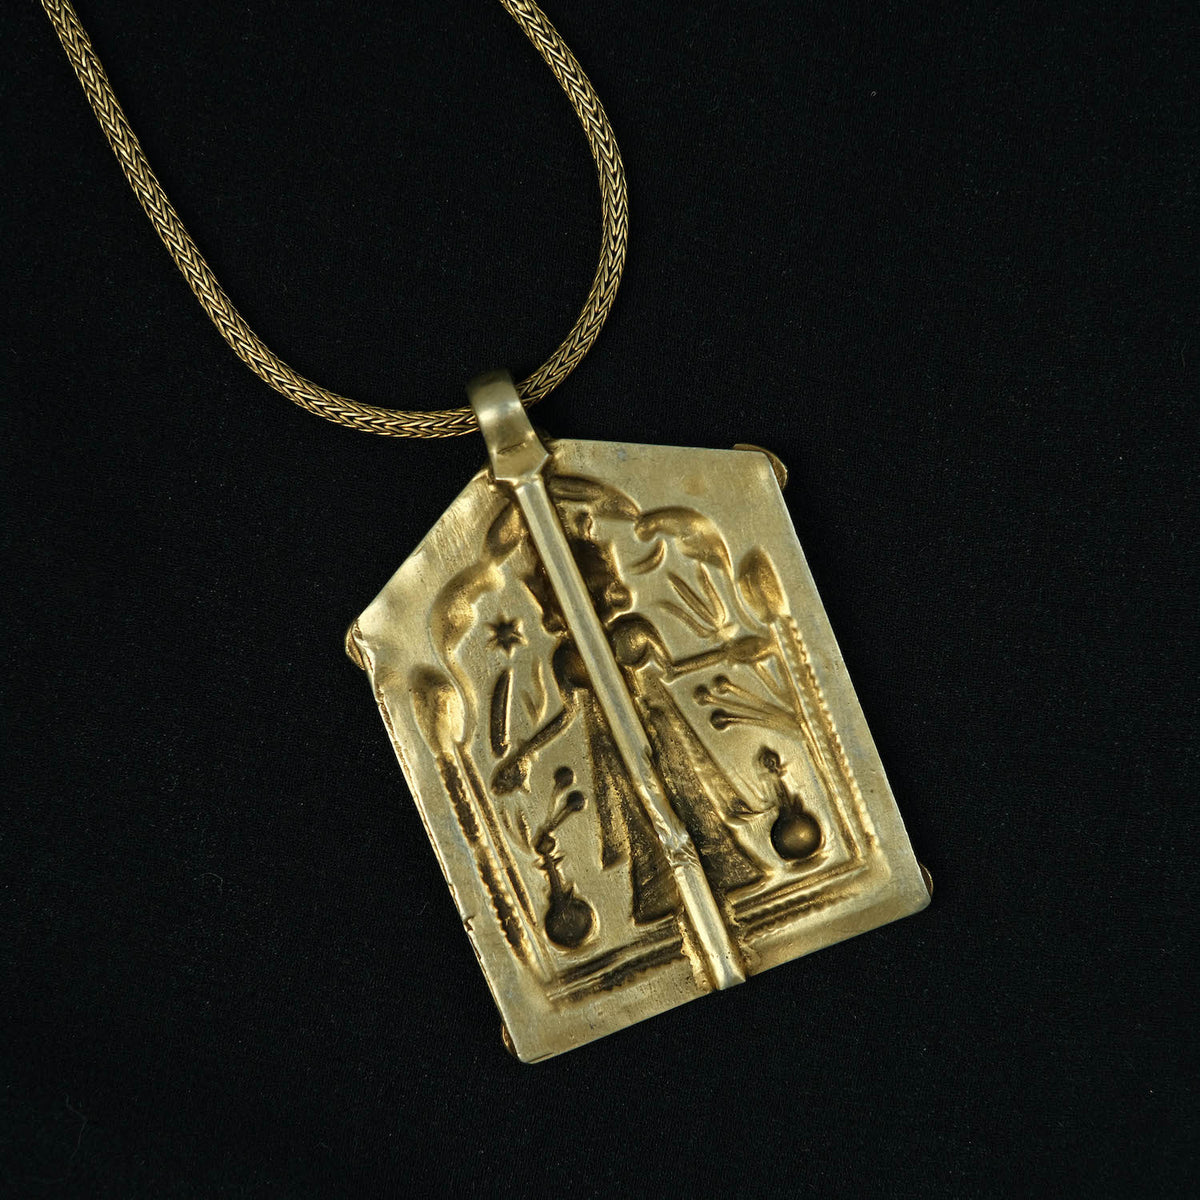 Amuleto antiguo en plata dorada de&nbsp; Laksmi, diosa hindú de la abundancia, felicidad y salud. La cadena también artesanal en plata de ley con baño de oro. Medidas colgante&nbsp; 5´5 cm x 3´5 cm/ Cadena longitud 65 cm Peso colgante 15 g / Cadena 15 g